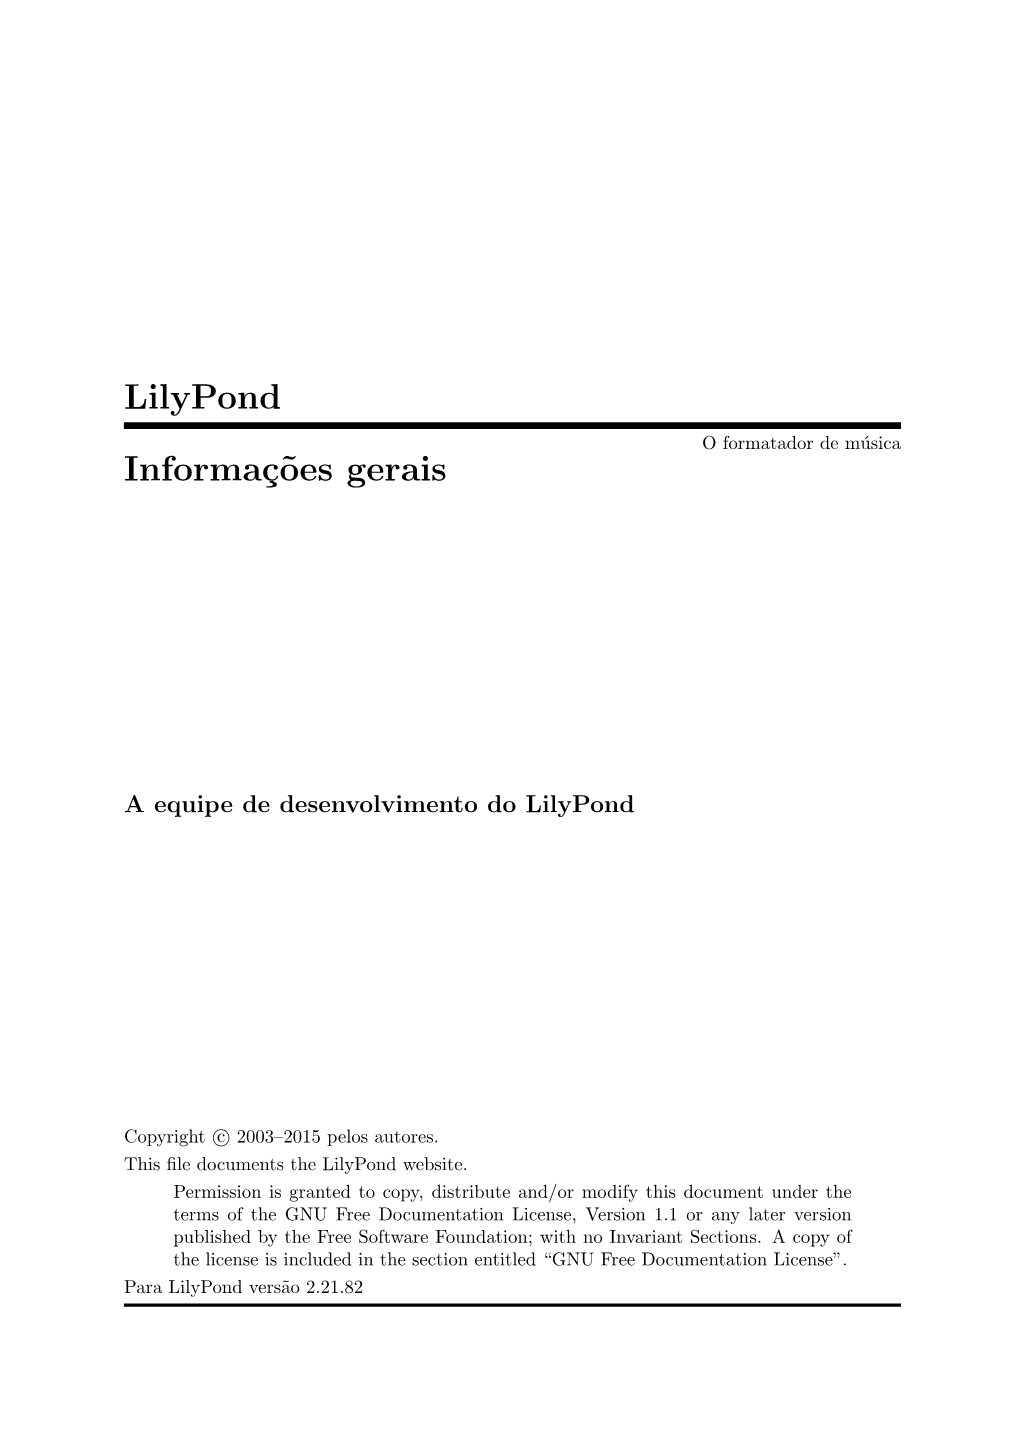 Lilypond Informaç˜Oes Gerais